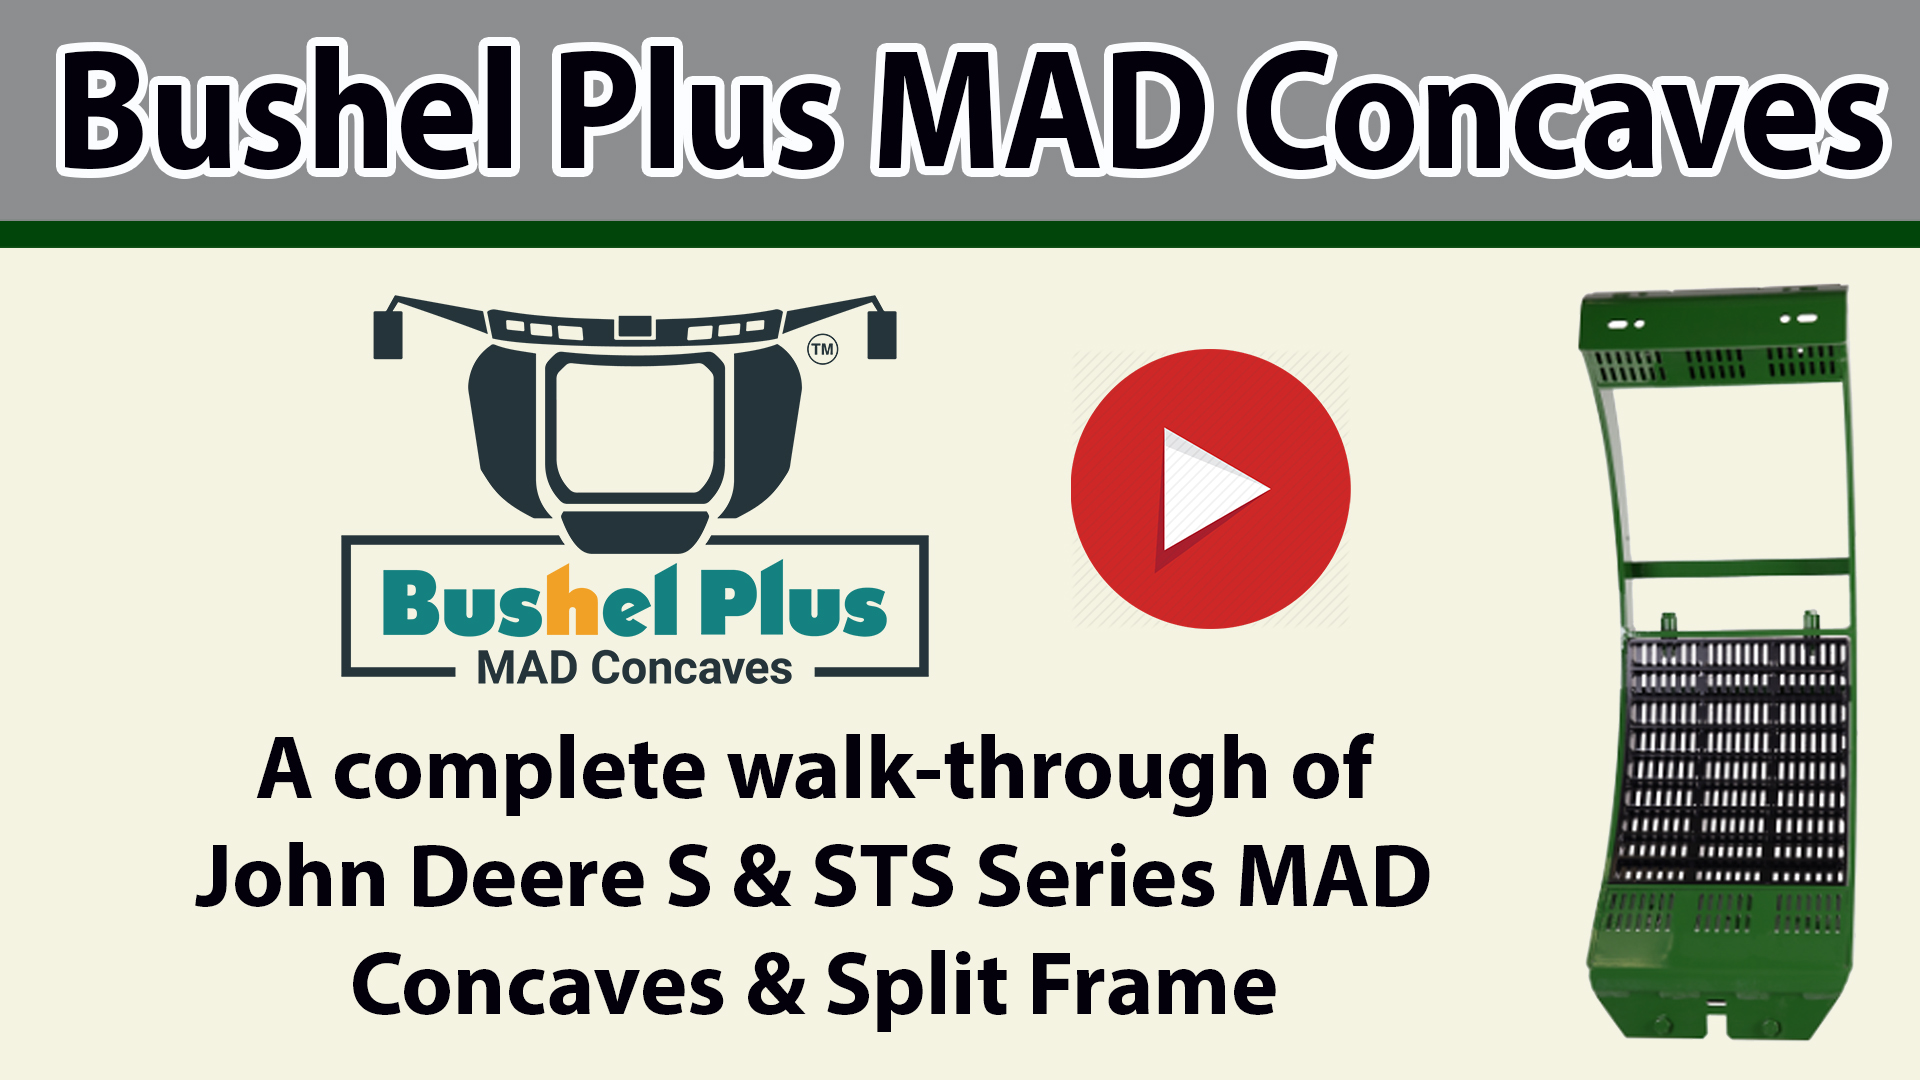 Bushel Plus MAD Concaves video